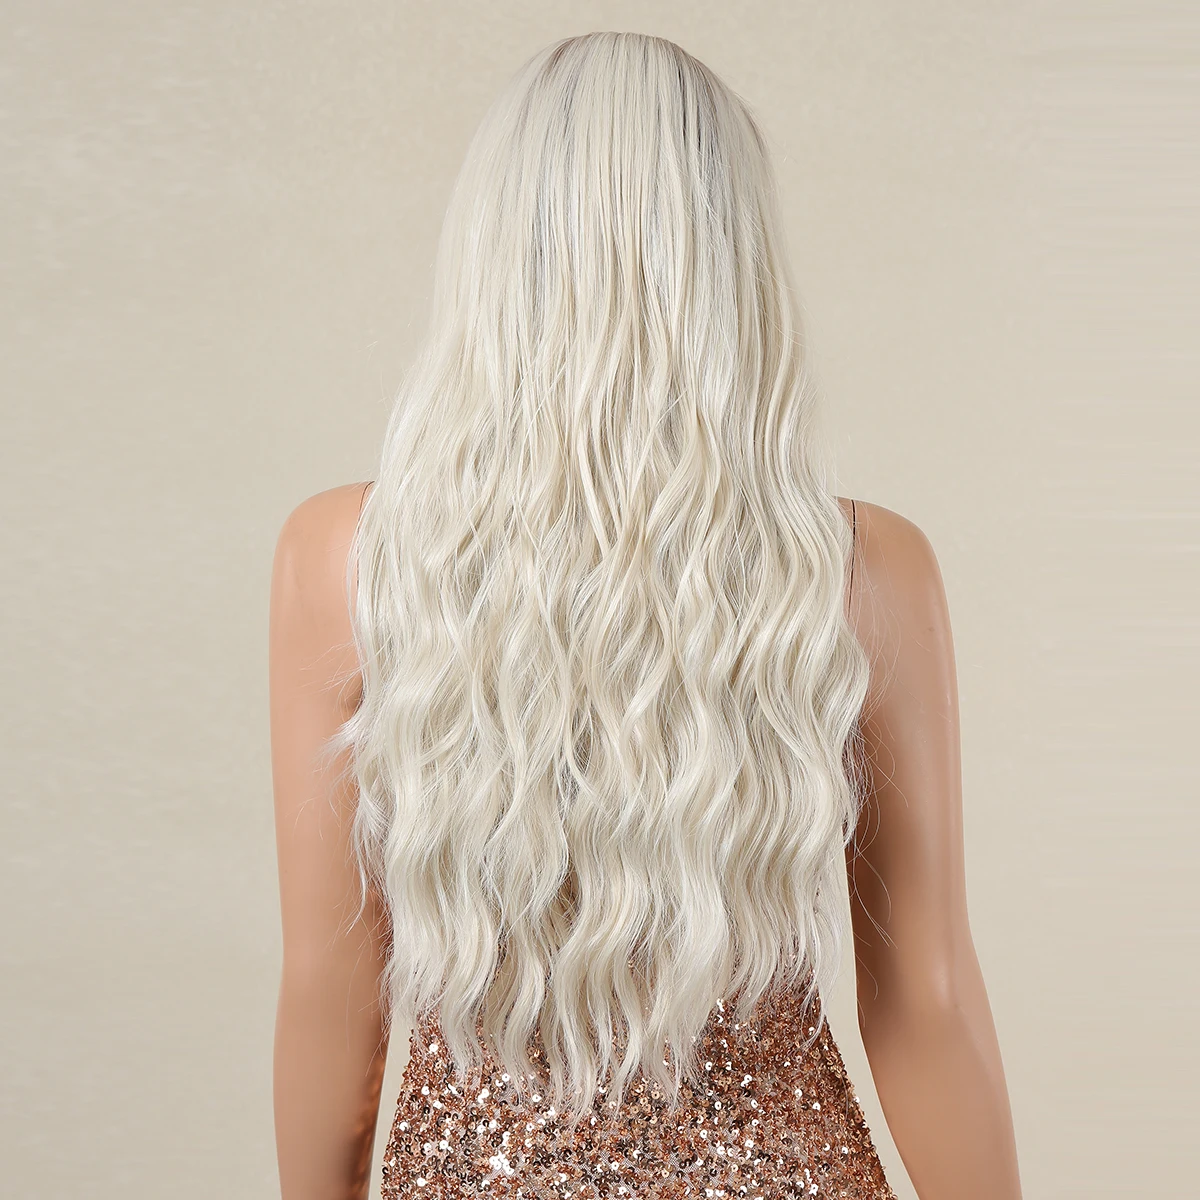 HENRY MARGU-peruca longa para mulheres, loira clara, platina, faixa de cabelo natural, onda profunda, boêmia, cabelo falso, sintético